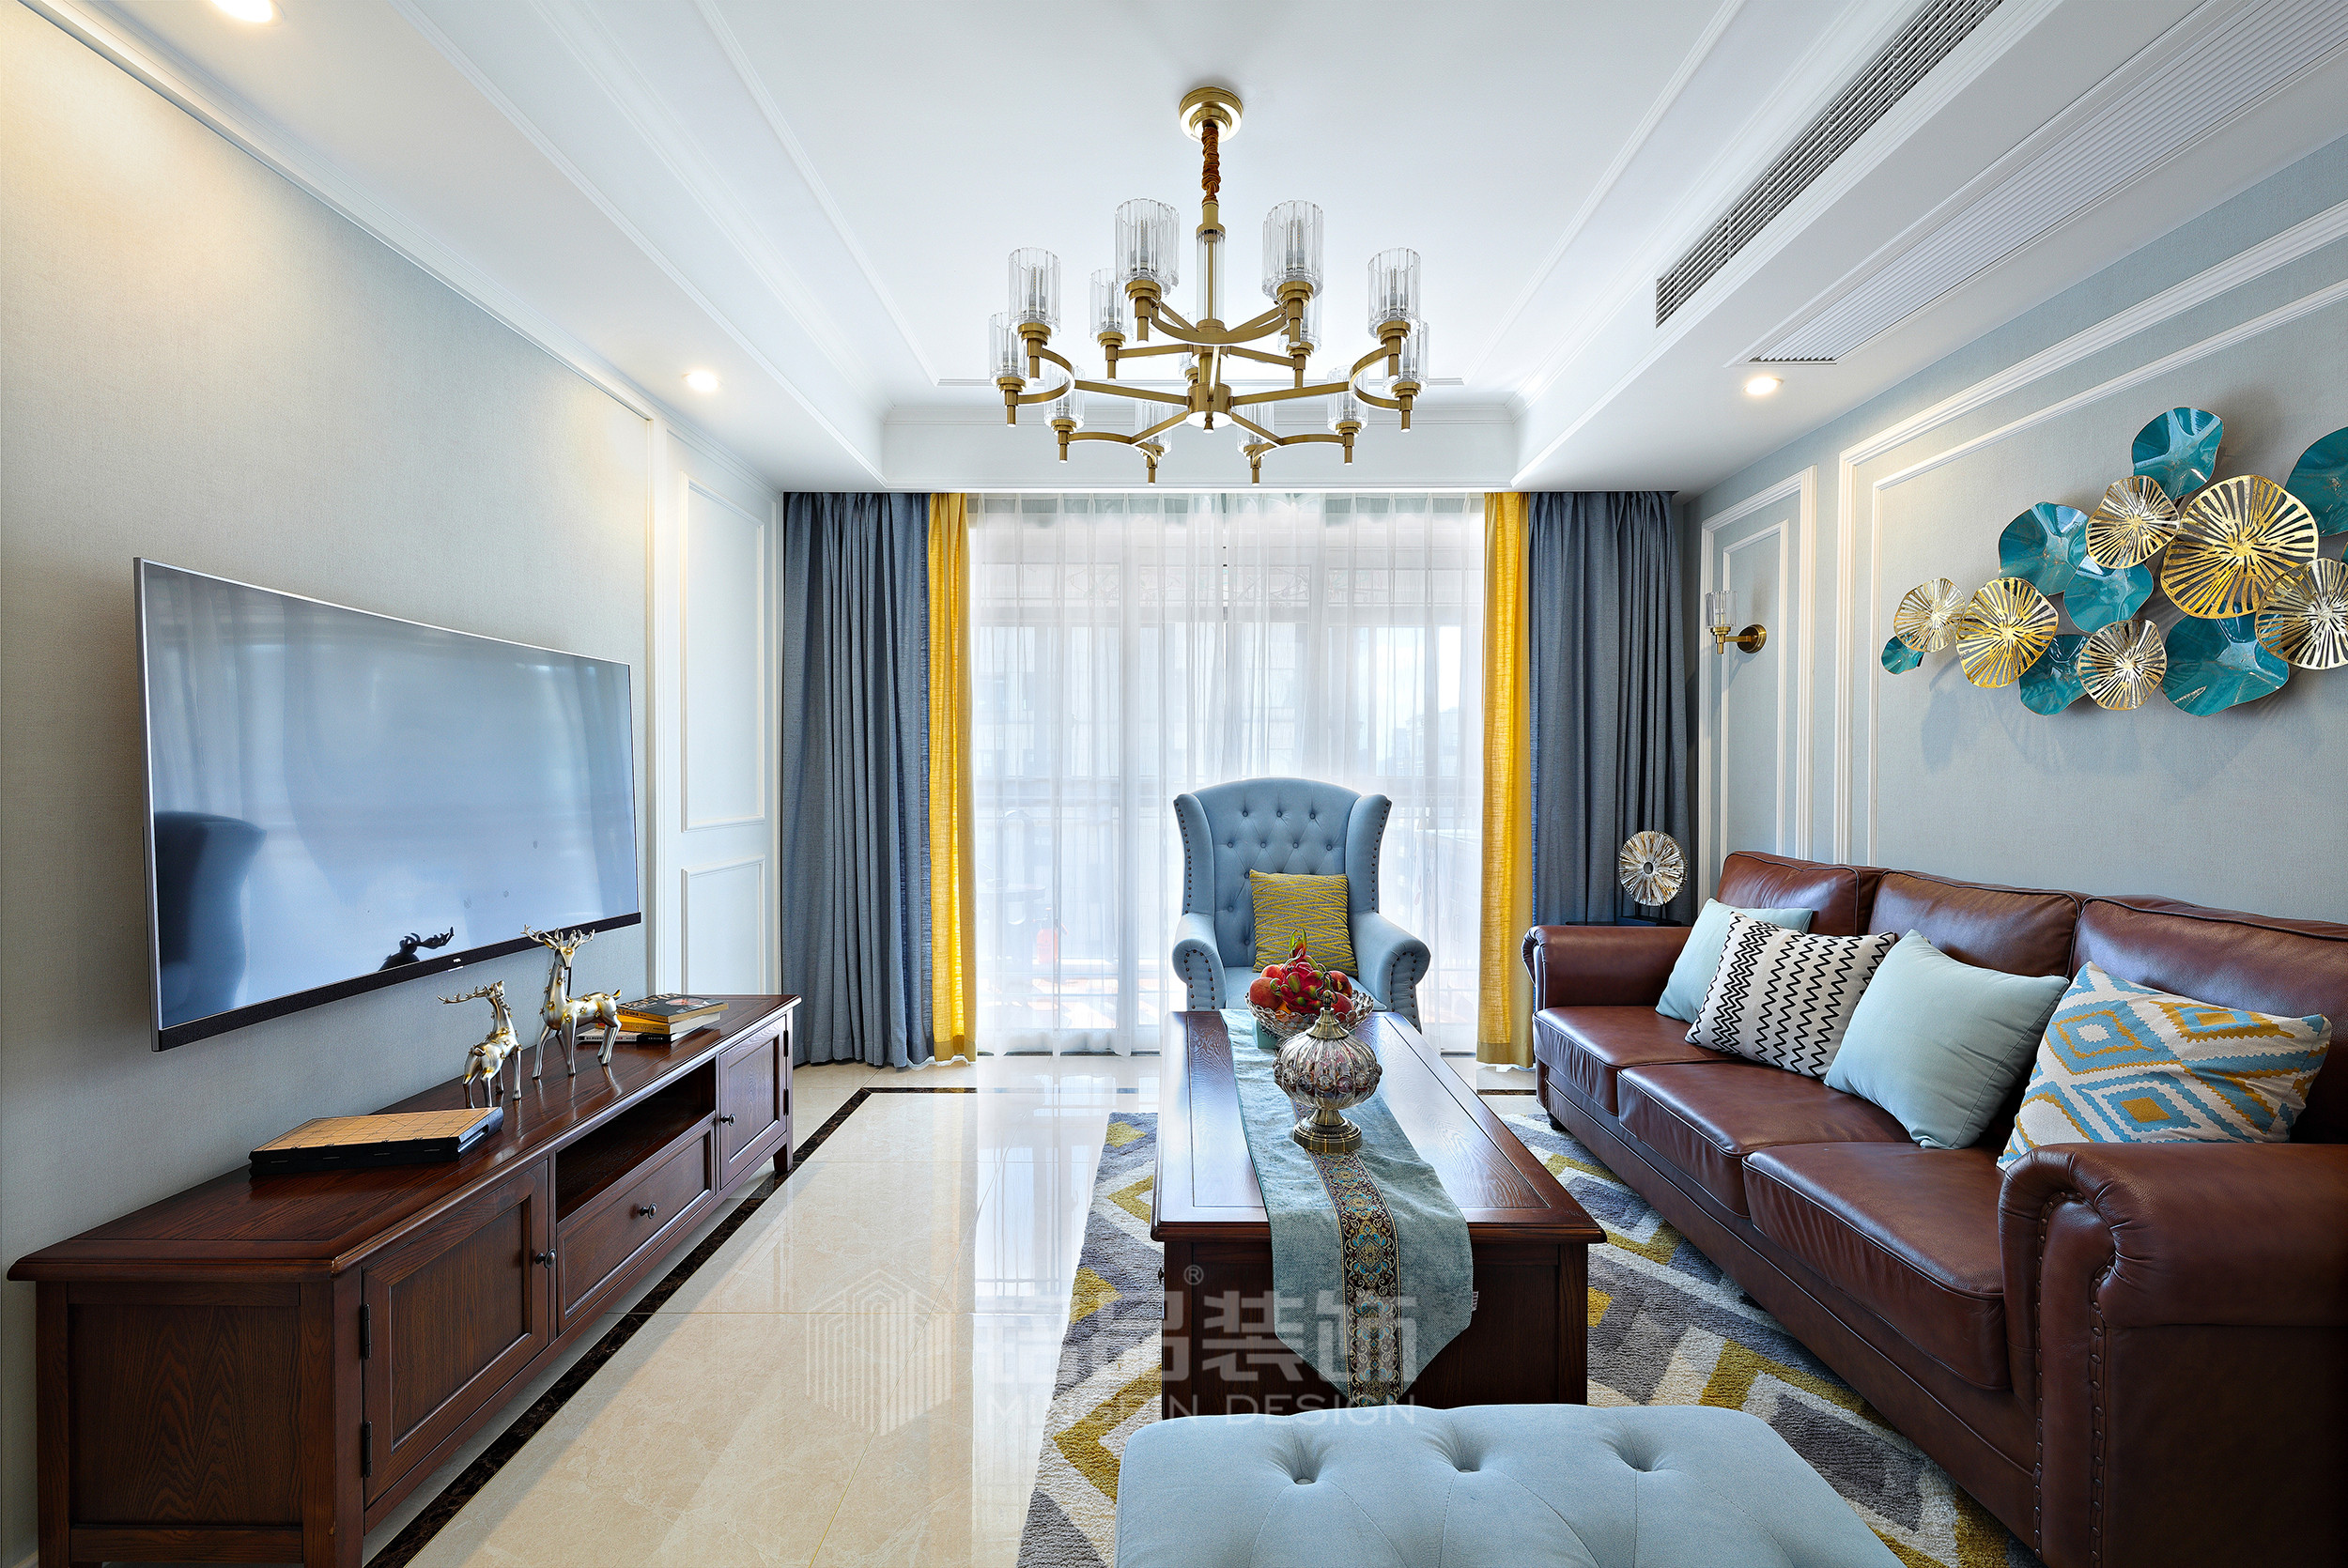 客厅采用了灰蓝调子的墙布,区别与传统美式,更显年轻,时尚